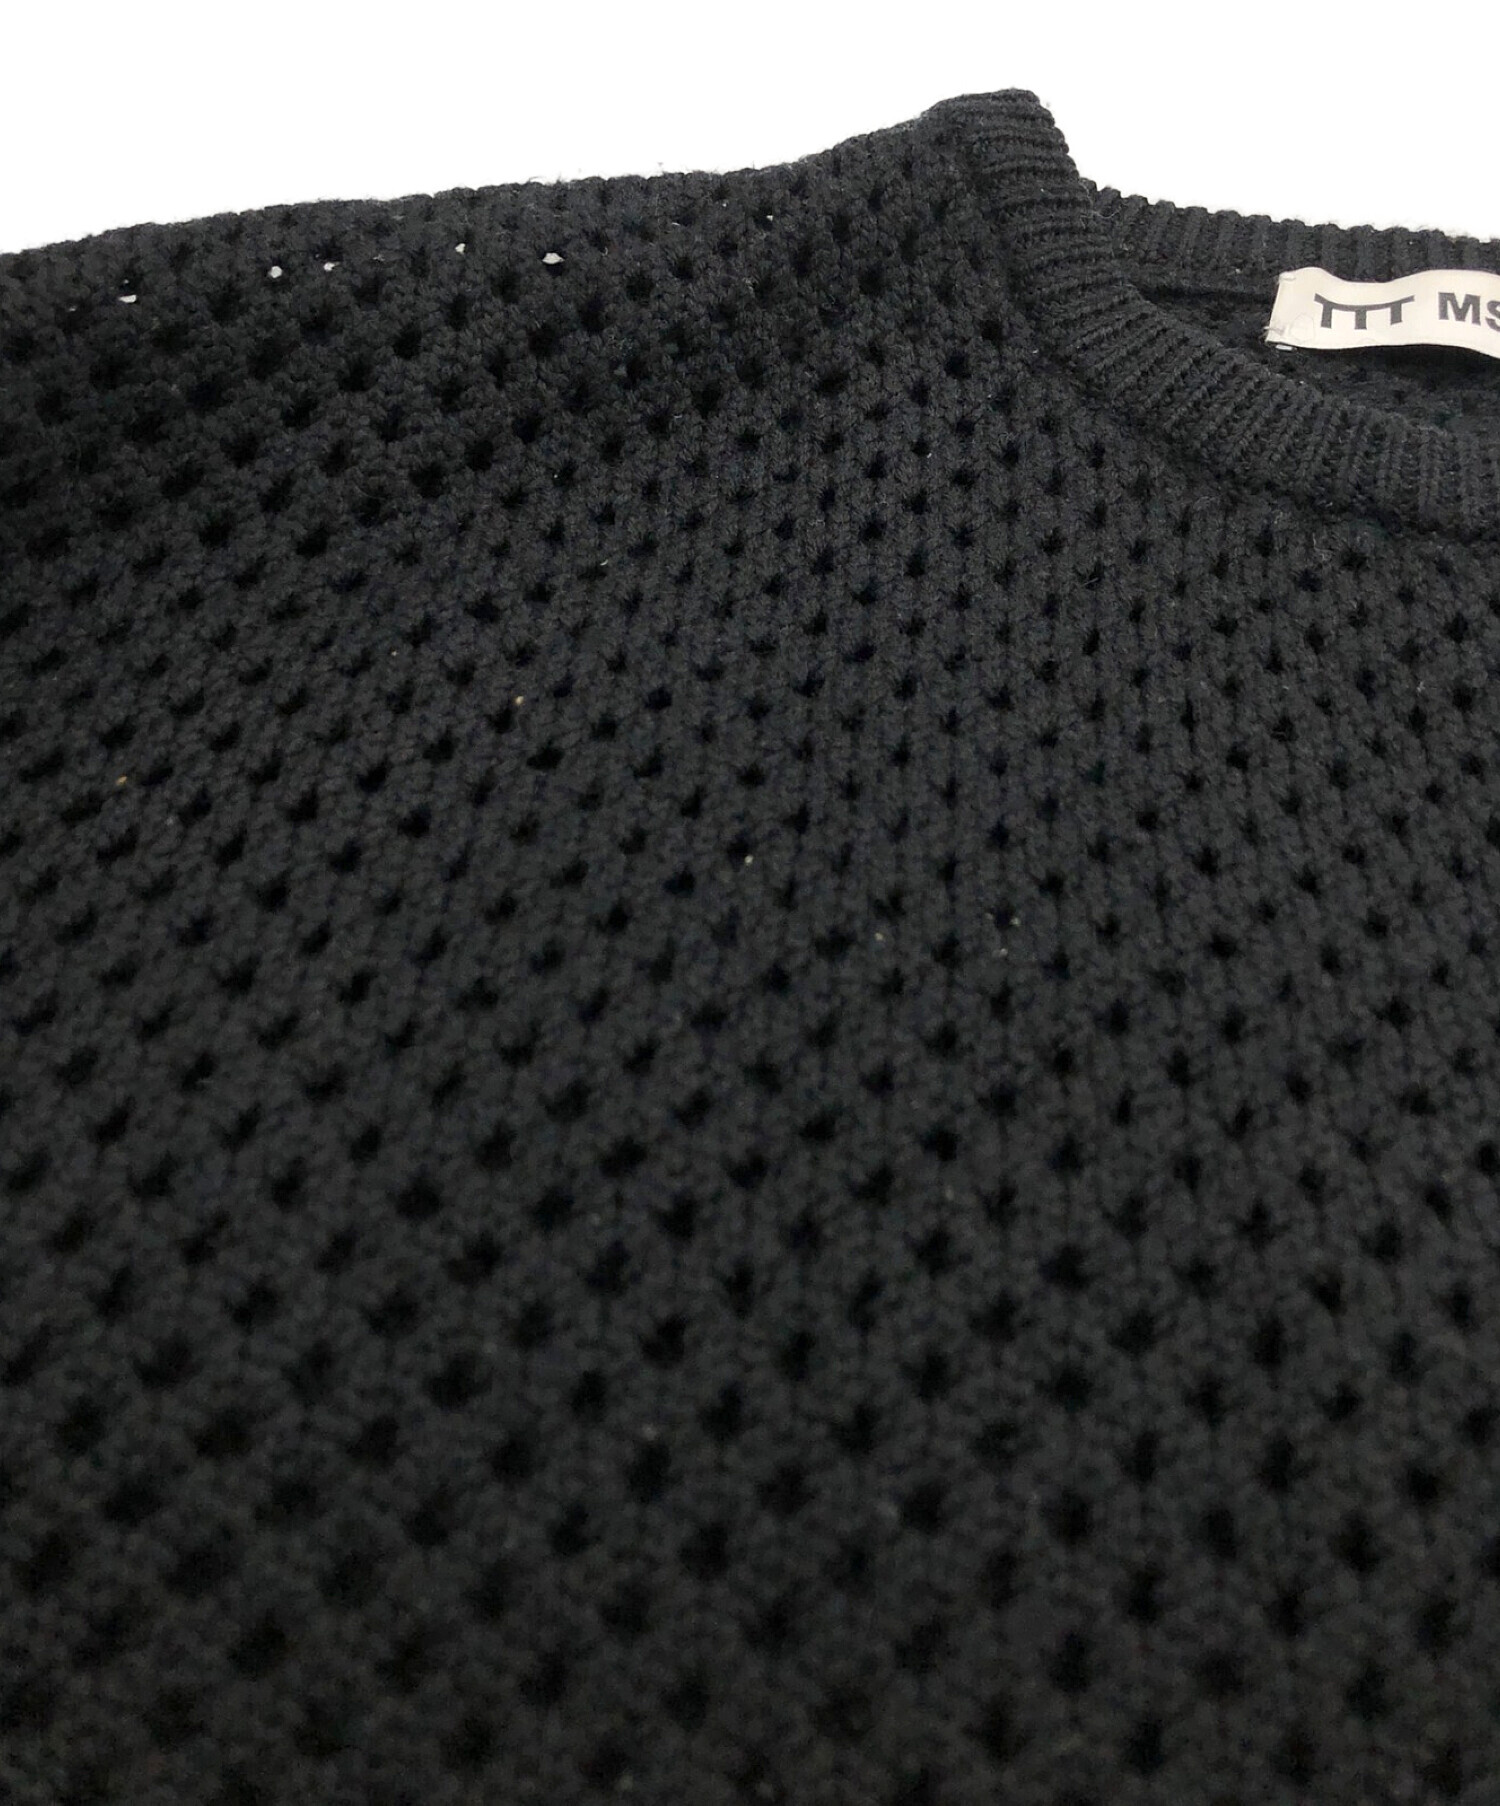 TTT MSW (ティーモダンストリートウェア) Wool Pullover Knit ブラック サイズ:Free